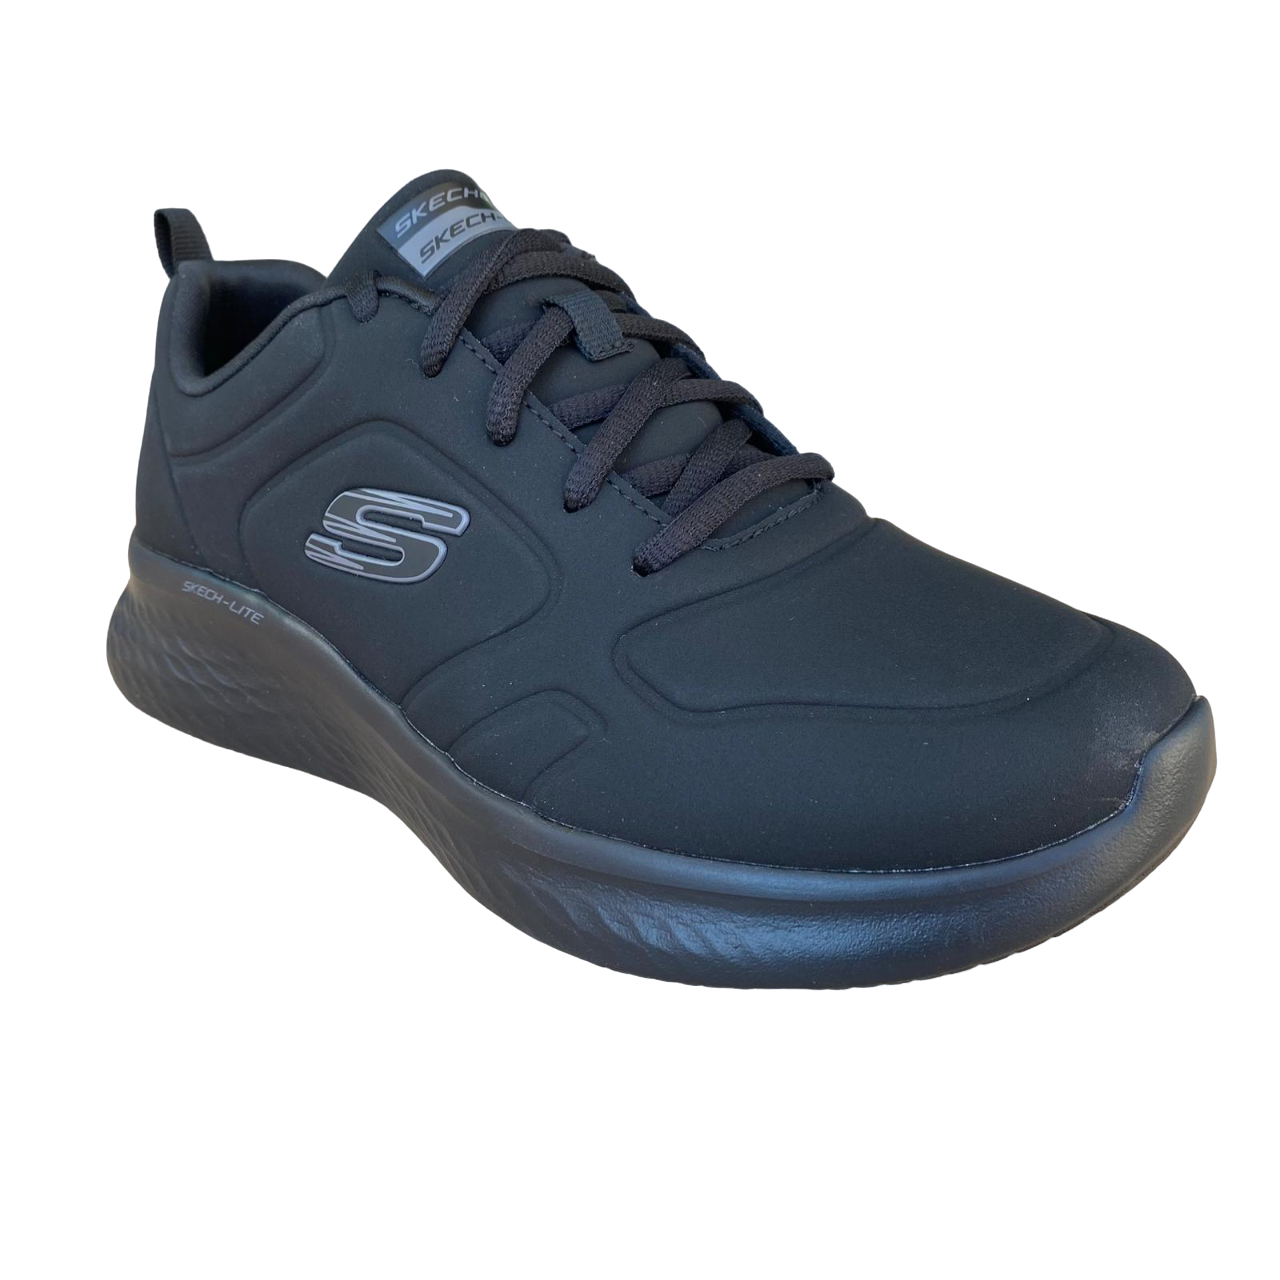 Skechers scarpa sneakers da tempo libero Skech-Lite Pro City Stride 150047/BBK nero